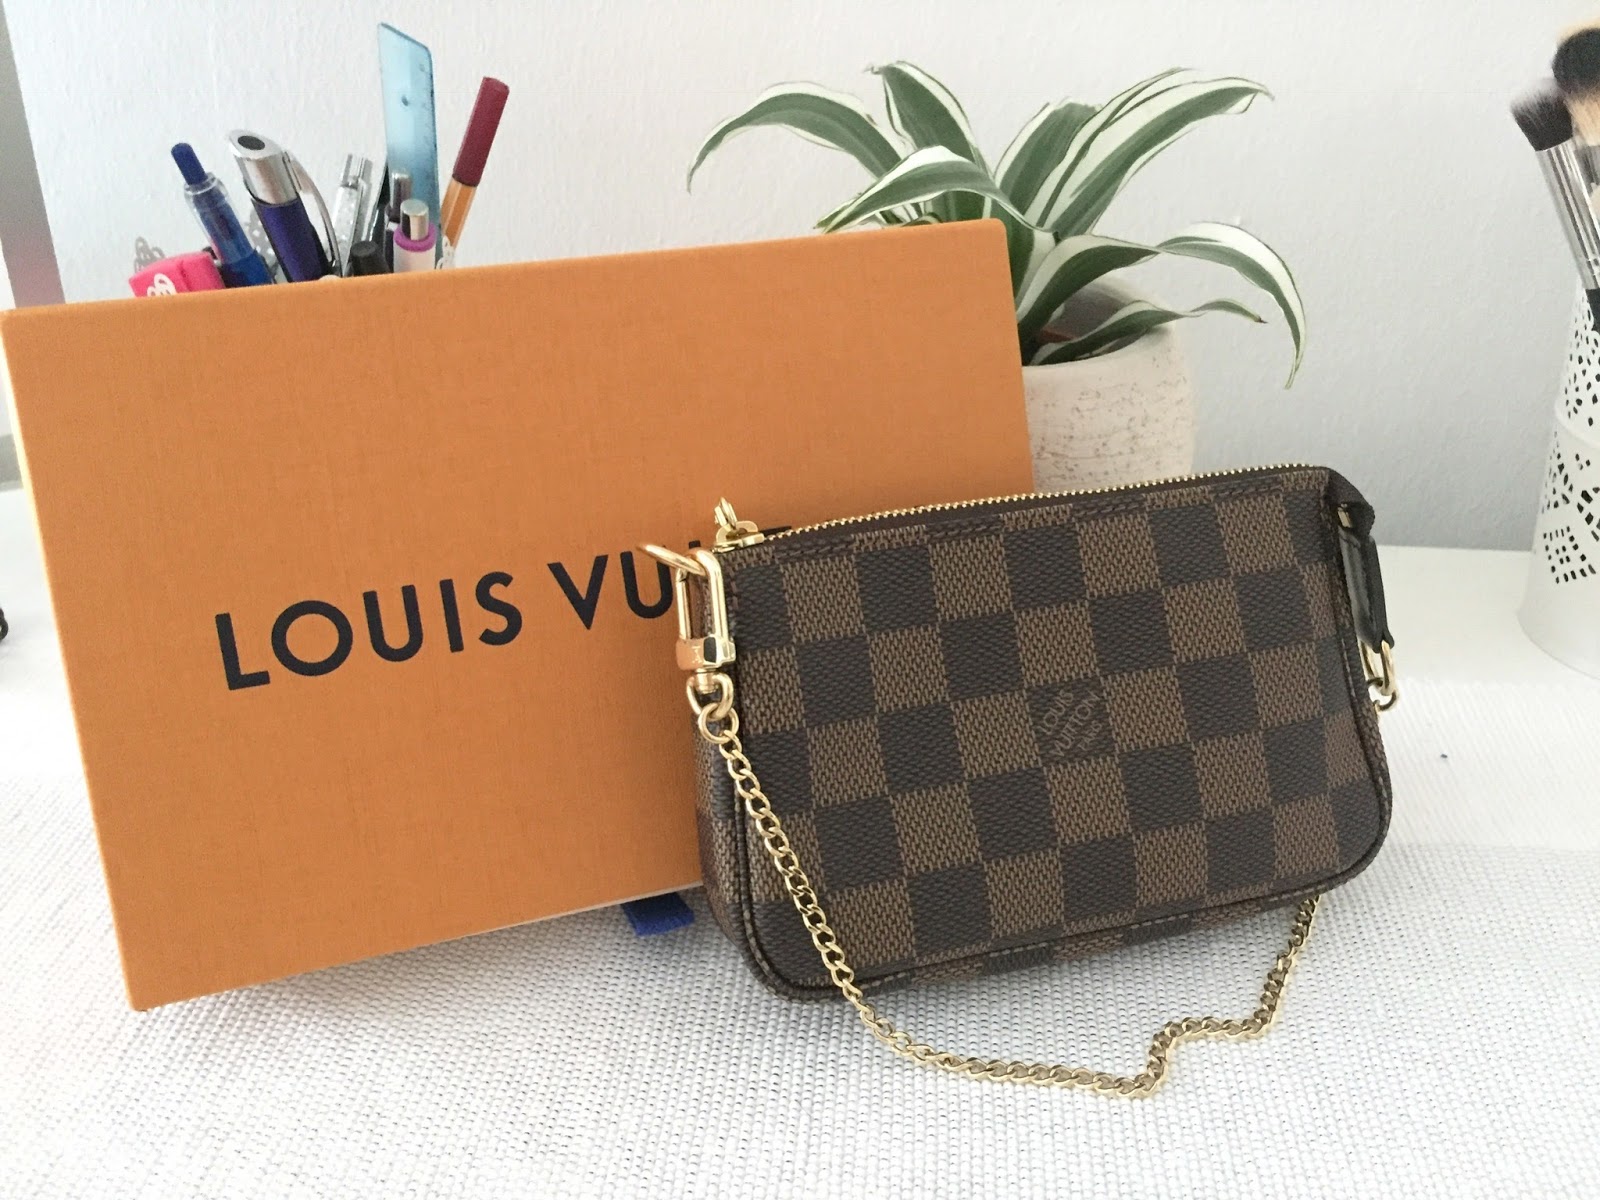 Louis Vuitton Damier Azur Belt Unboxing